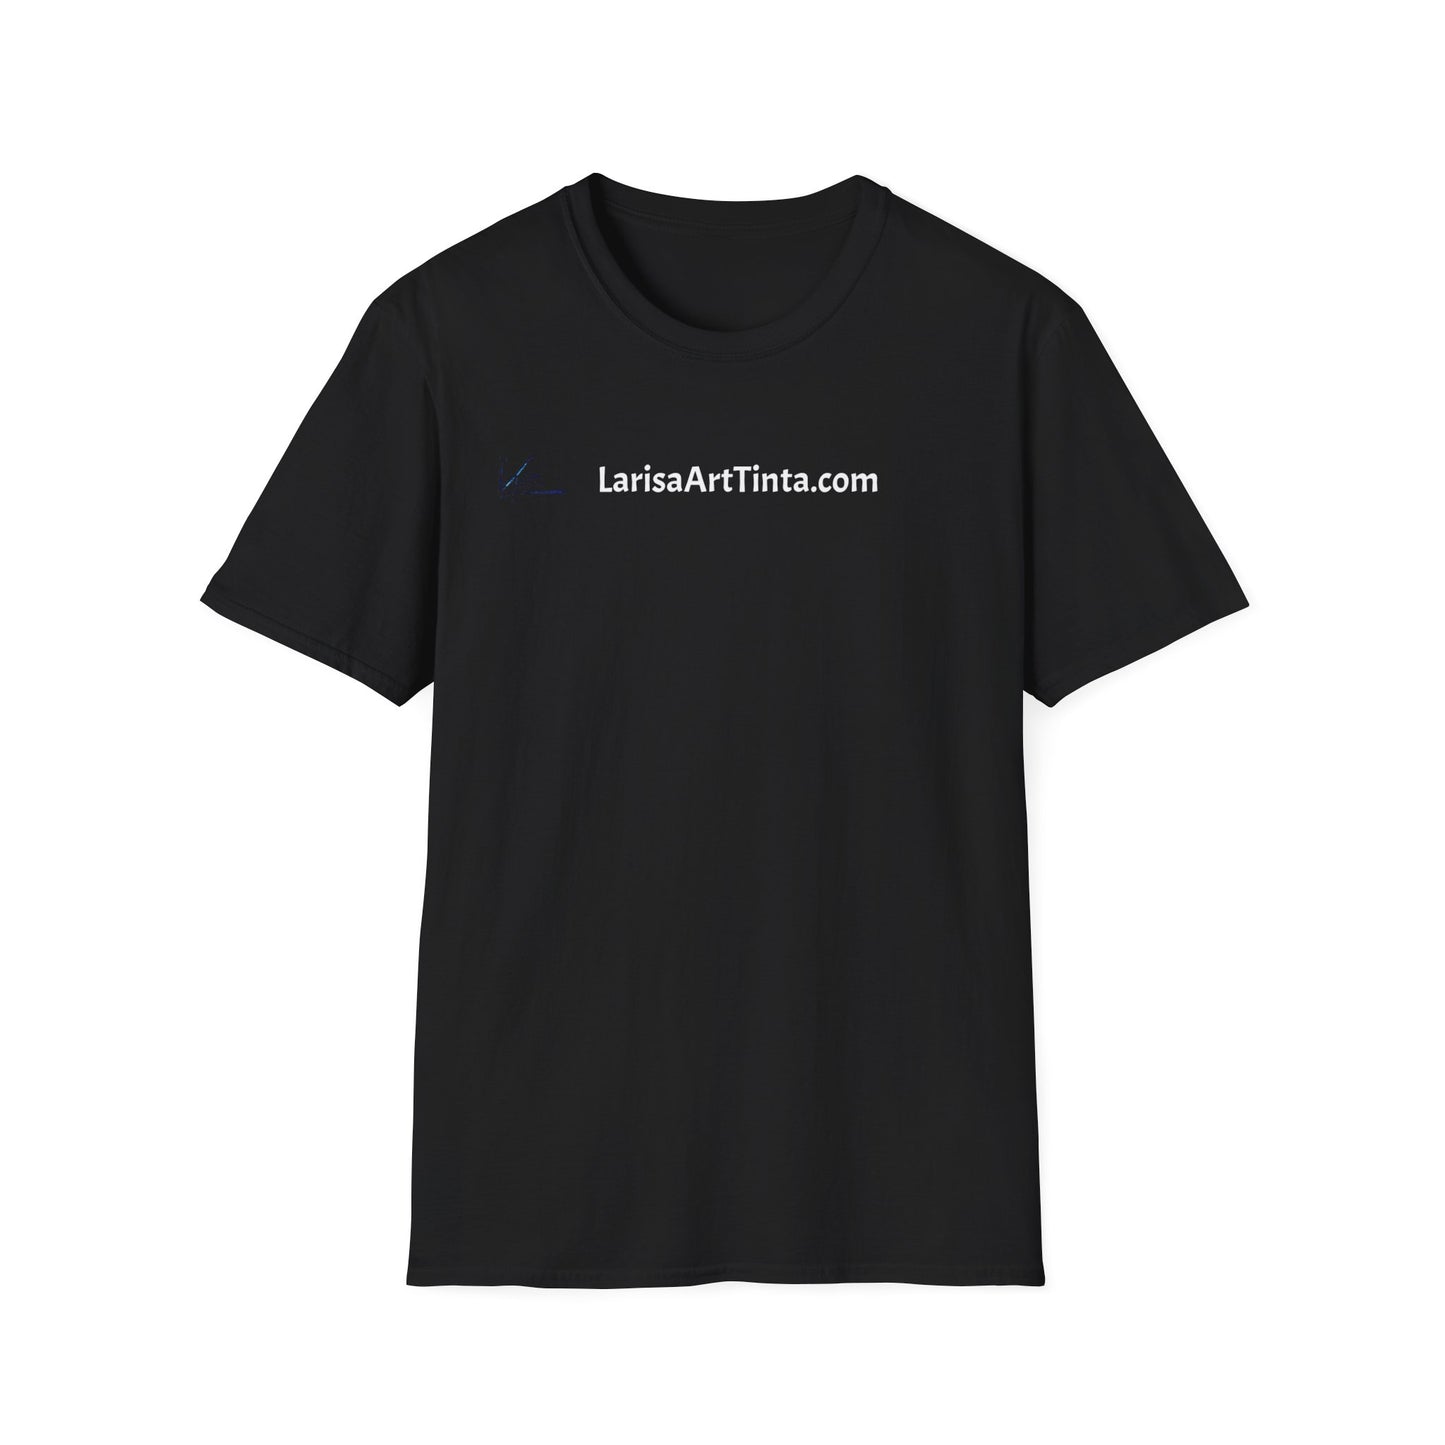 Unisex-T-Shirt mit 2 Logos 